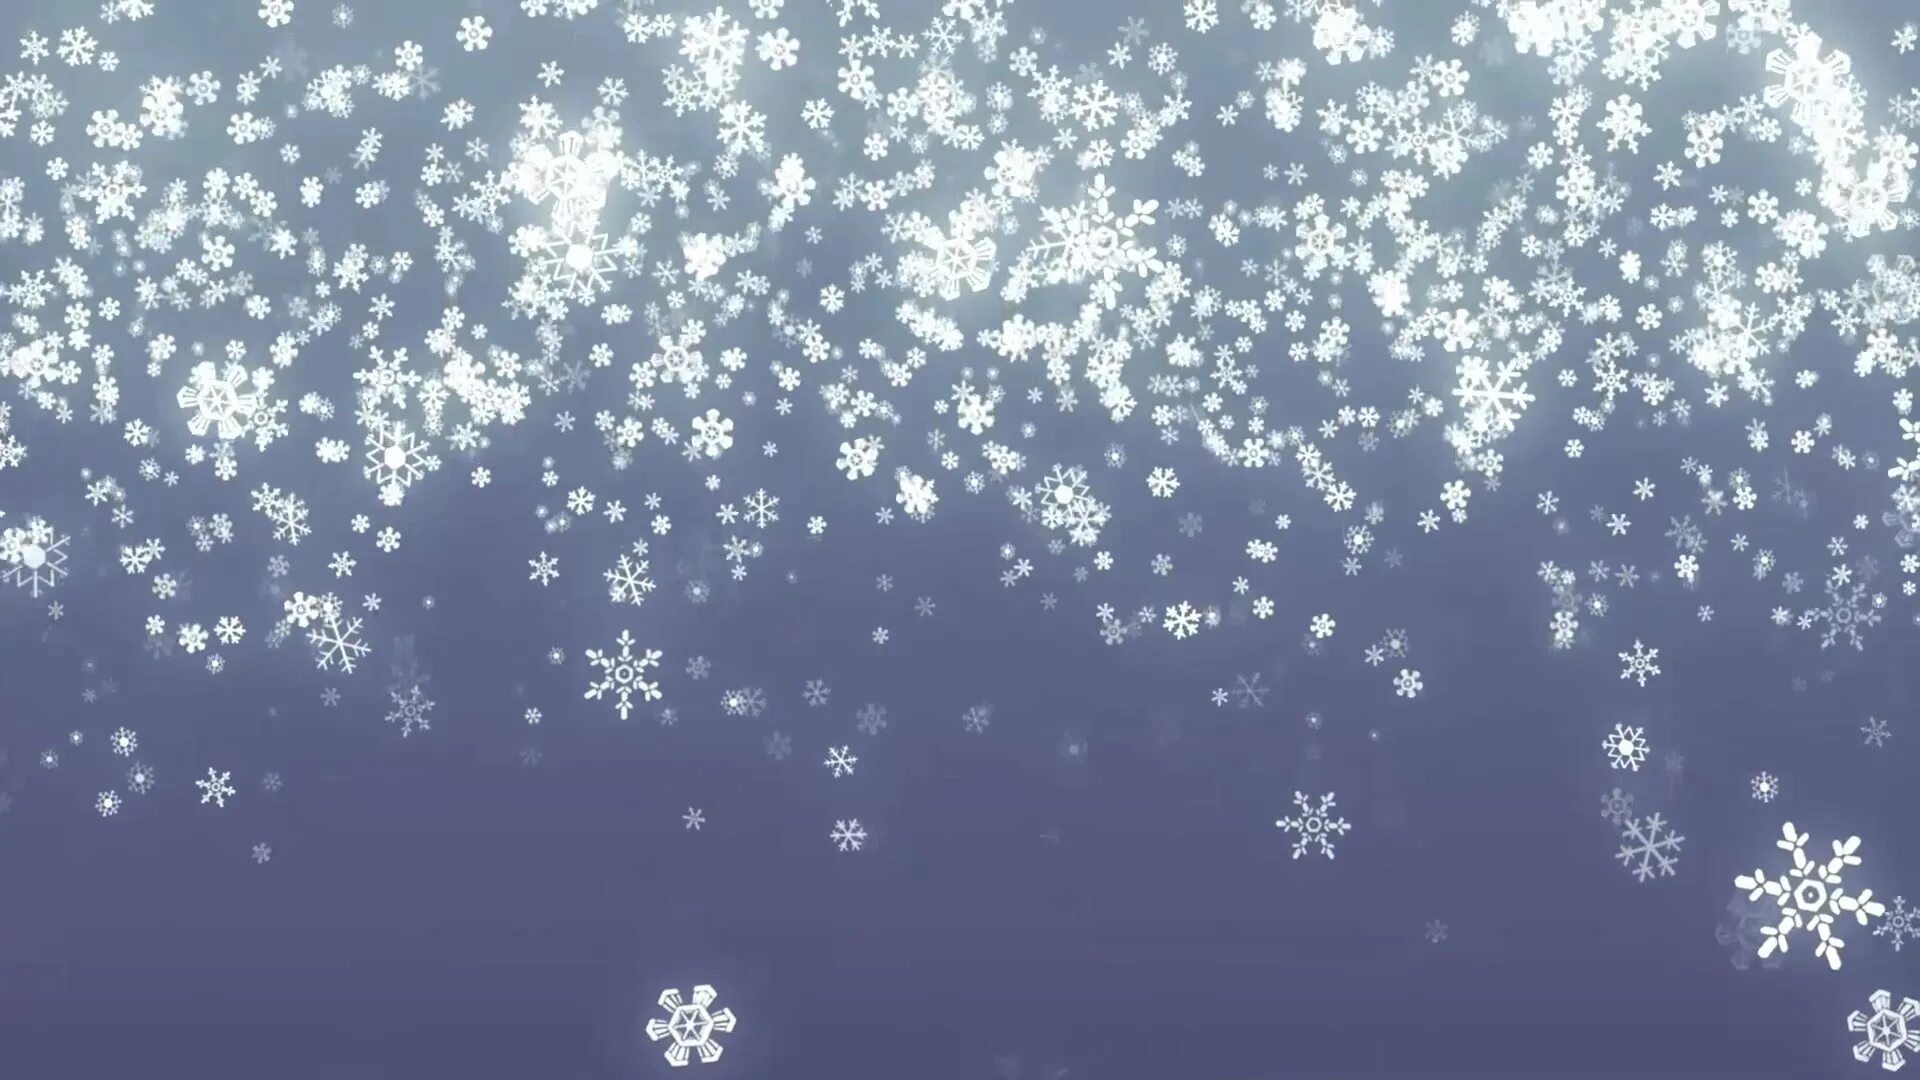 Снежинки падают. Падающий снег. Снег анимация. Снежинки снегопад. Снежинки падая с неба кружатся